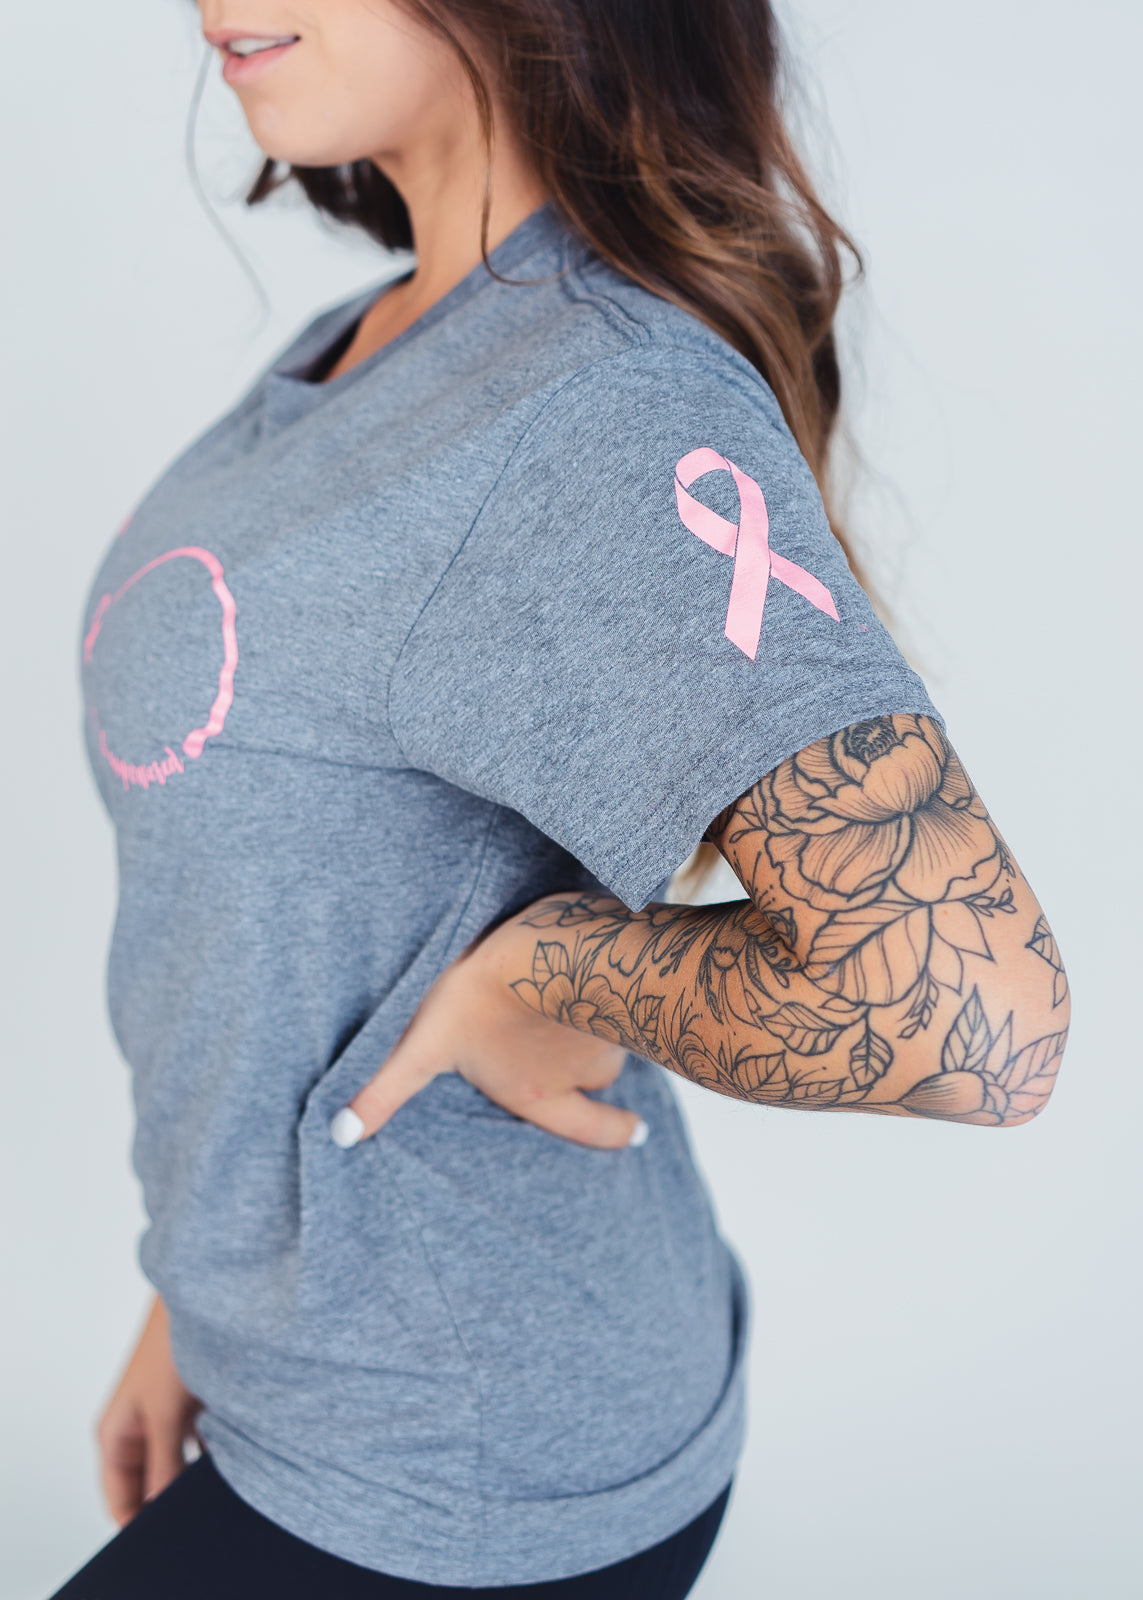 T-Shirt | Pink Ribbon Breast Cancer Awareness